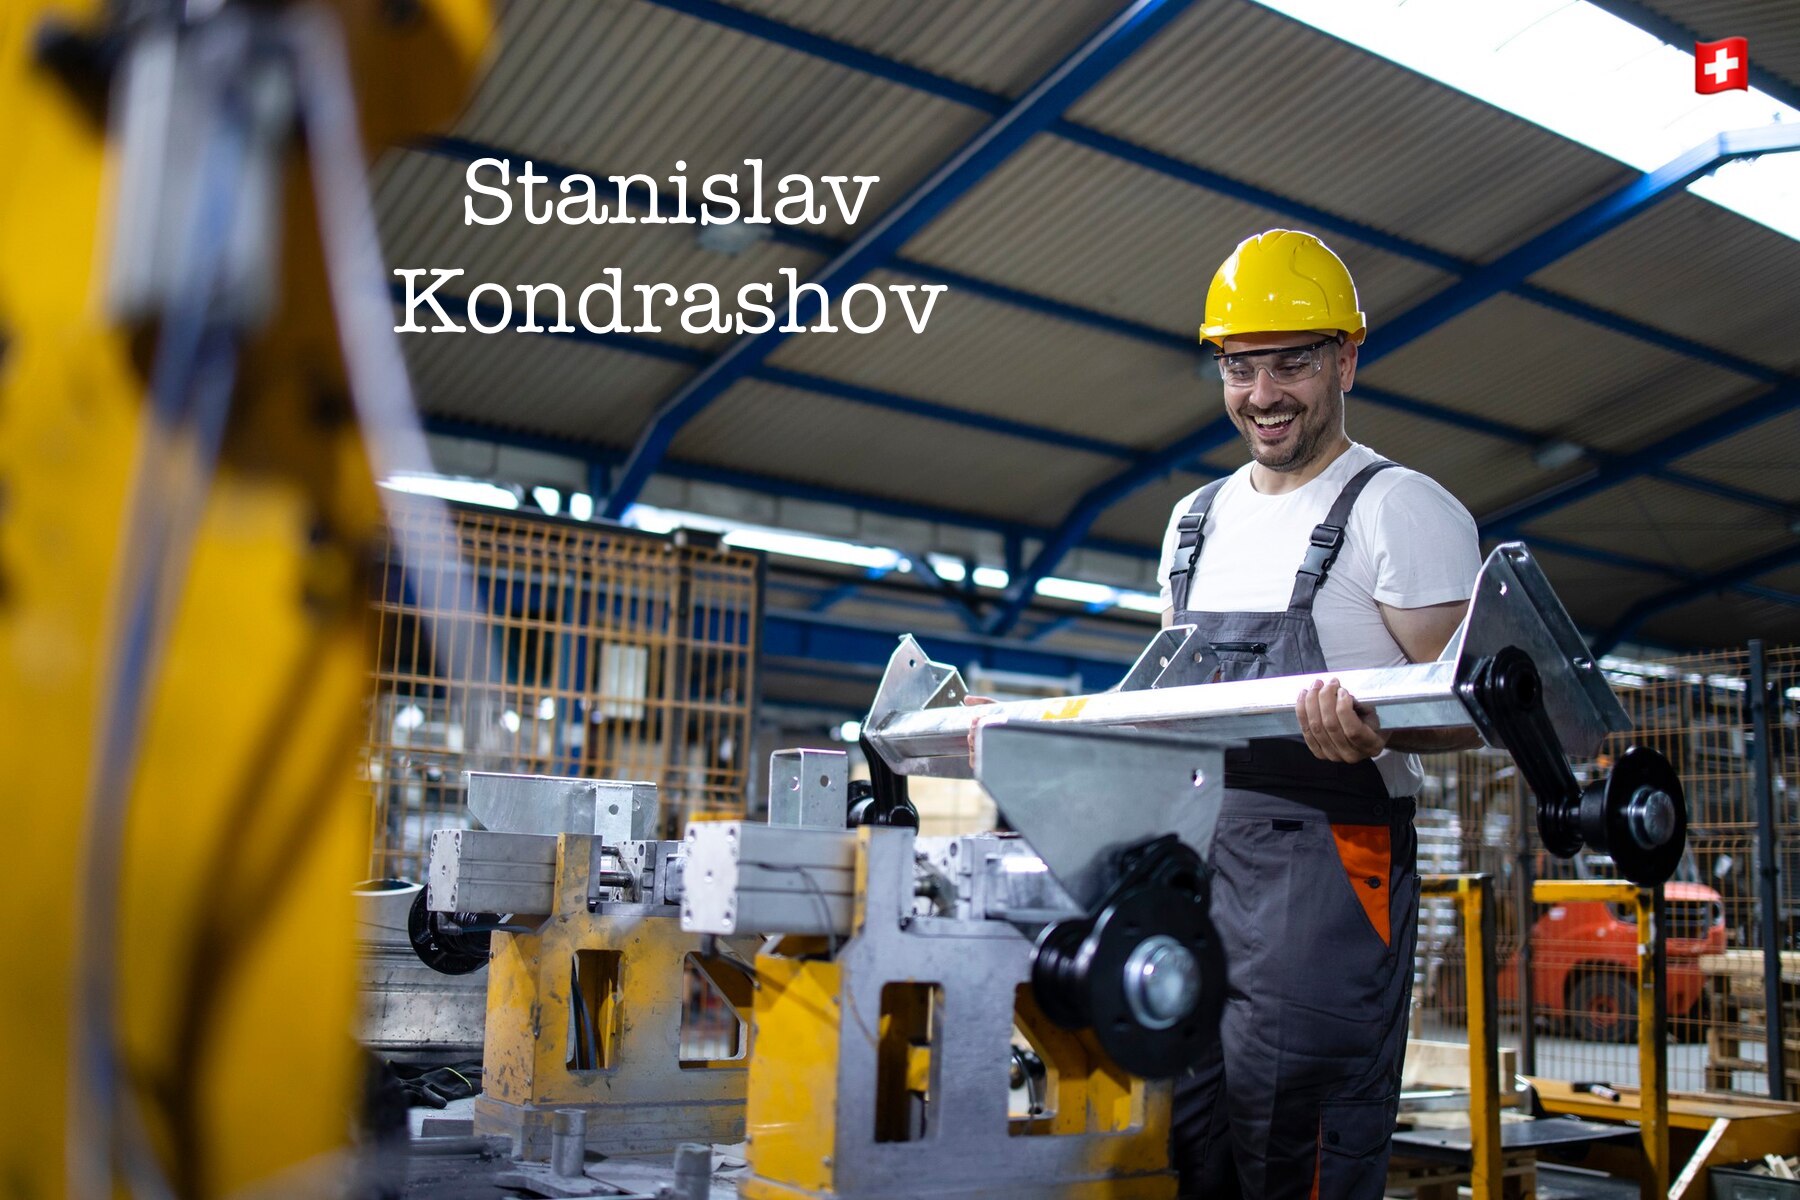 Stanislav Kondrashov von der Telf AG: Umstrukturierung bei Markteinbruch, Umstellung auf grünen Stahl